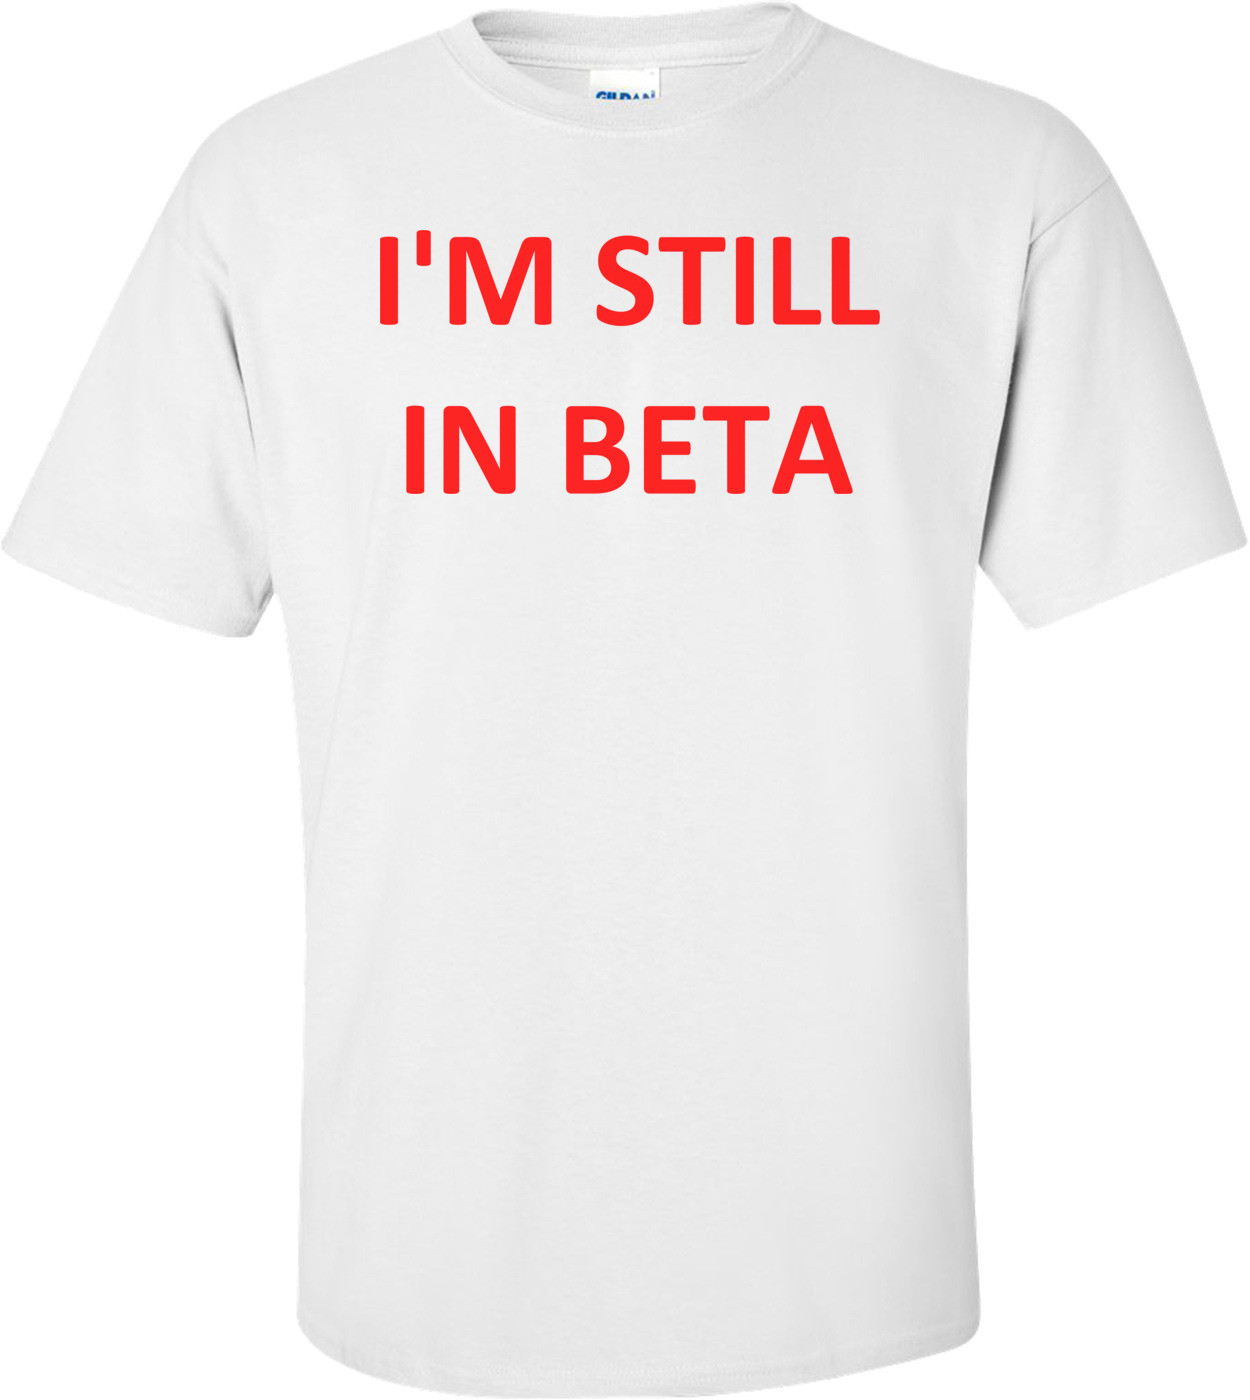 I'M STILL IN BETA Shirt